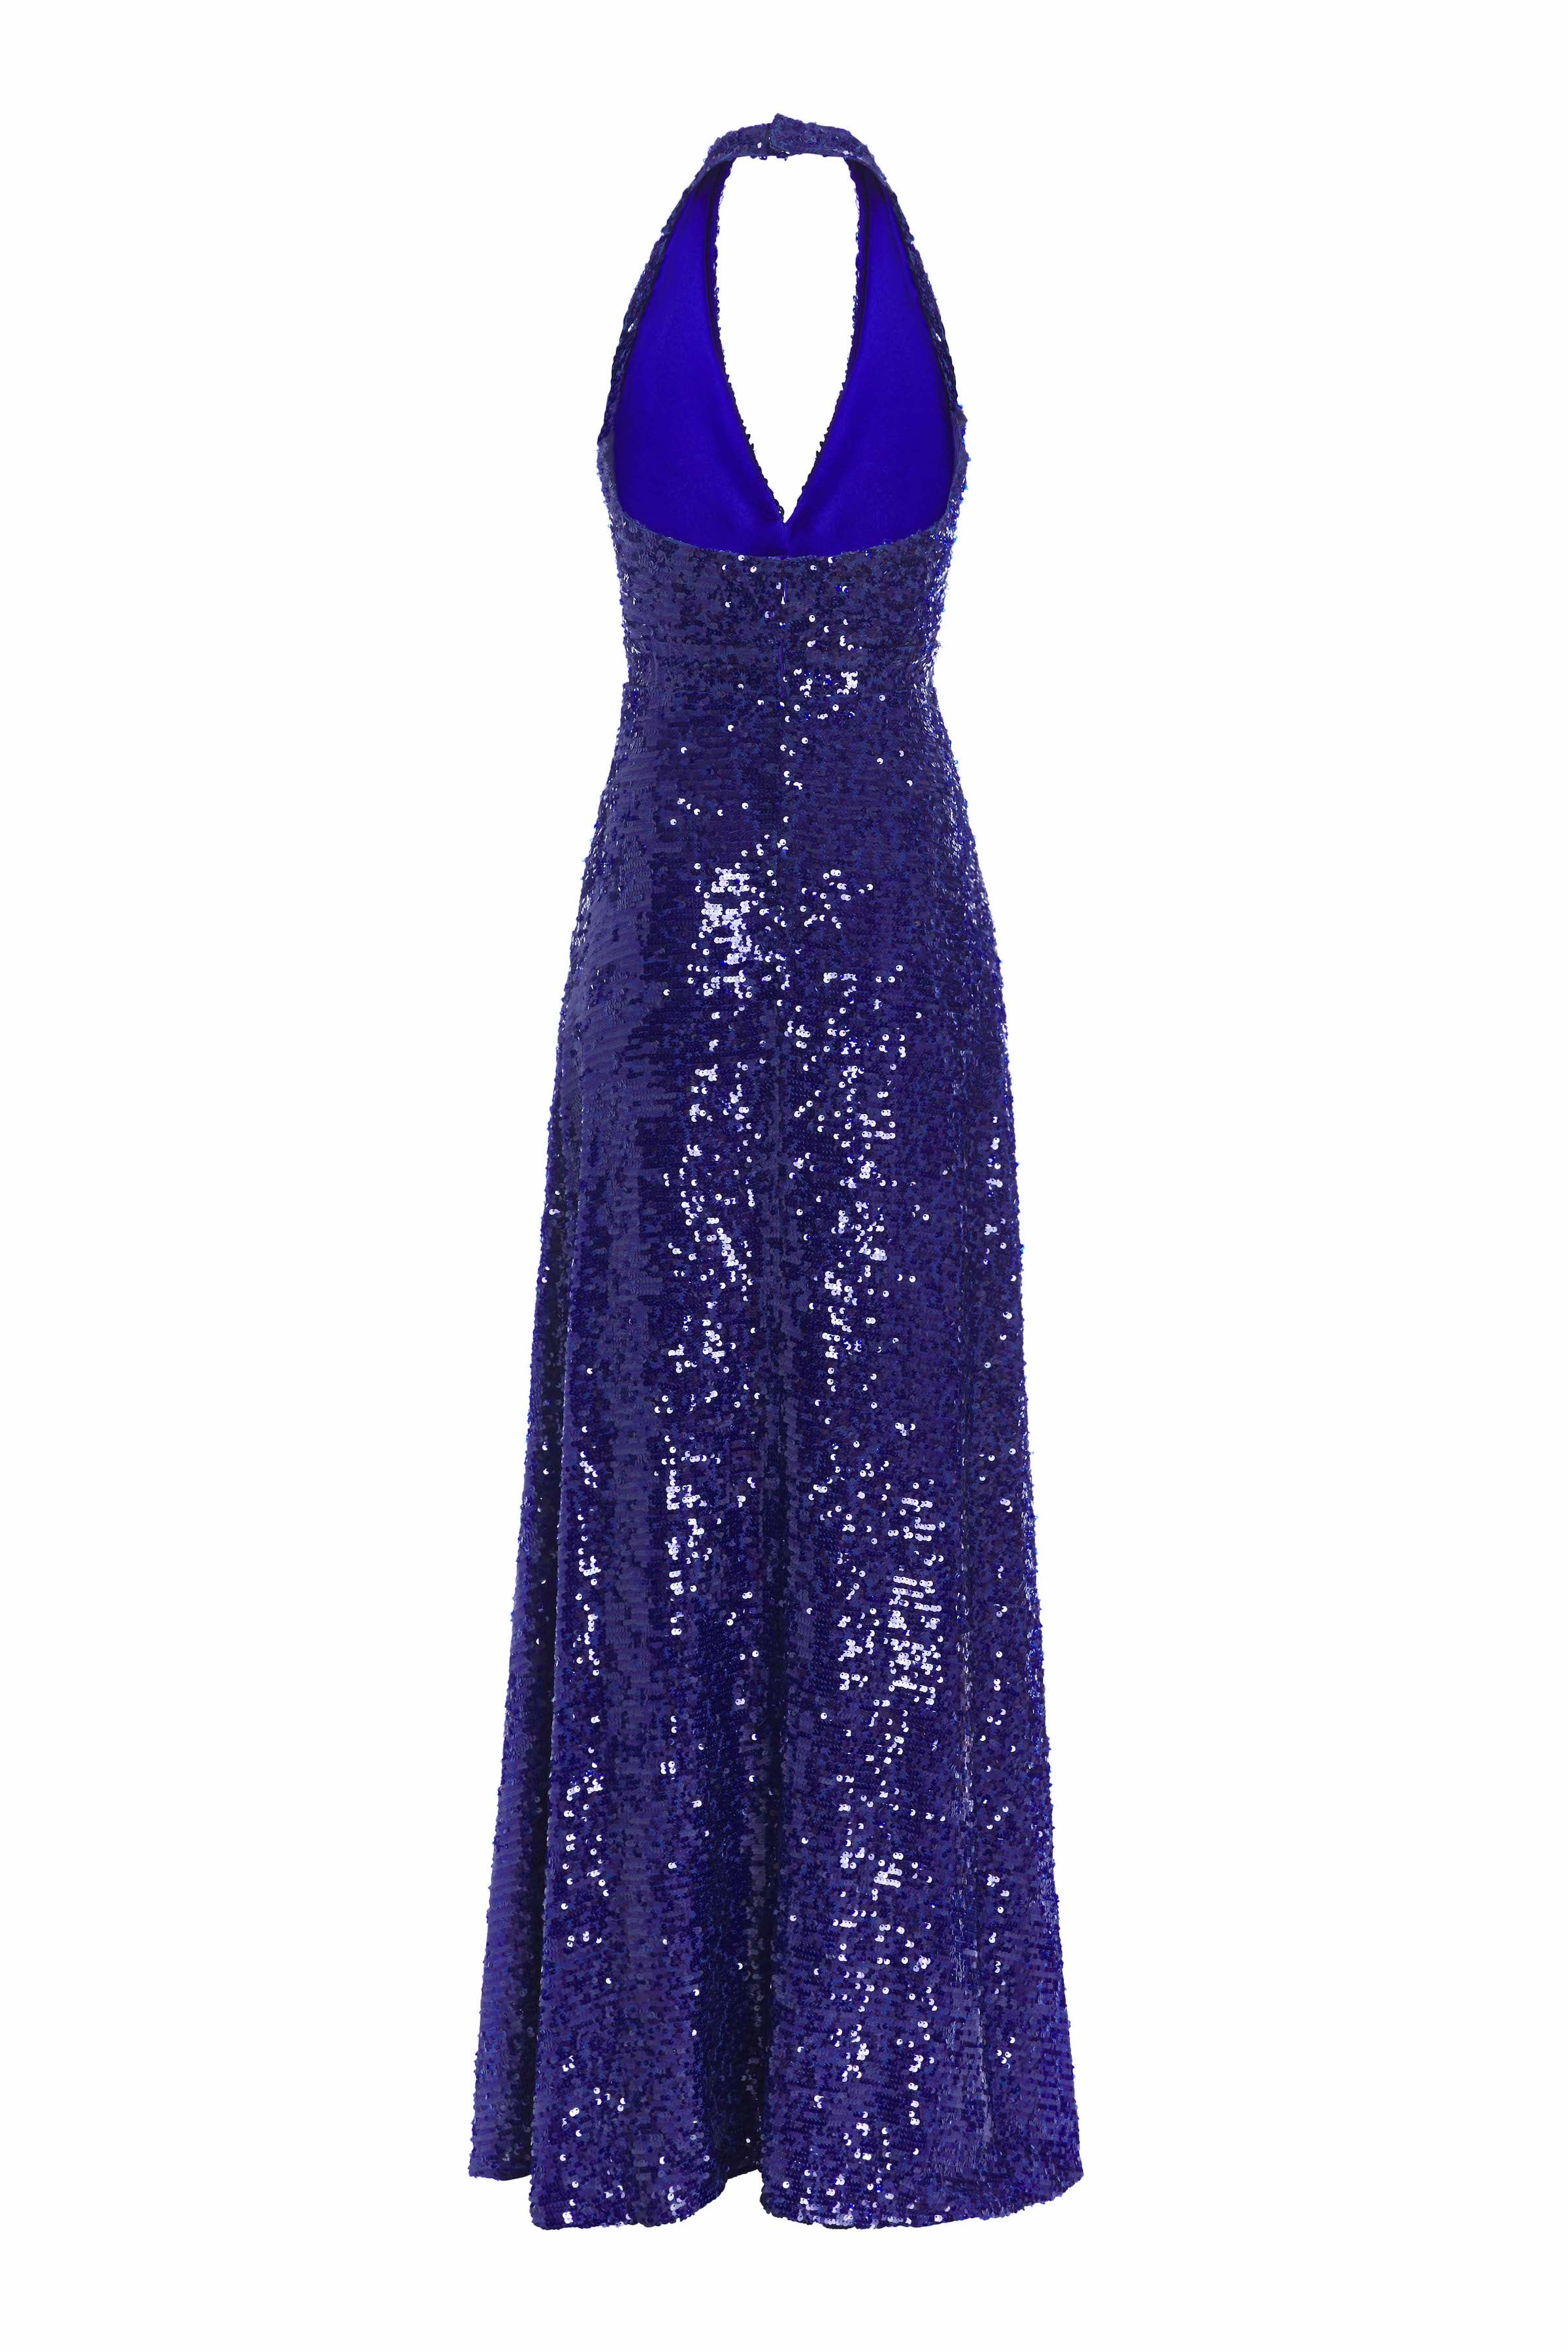 Eartha Cobalt Sequin Halter Gown